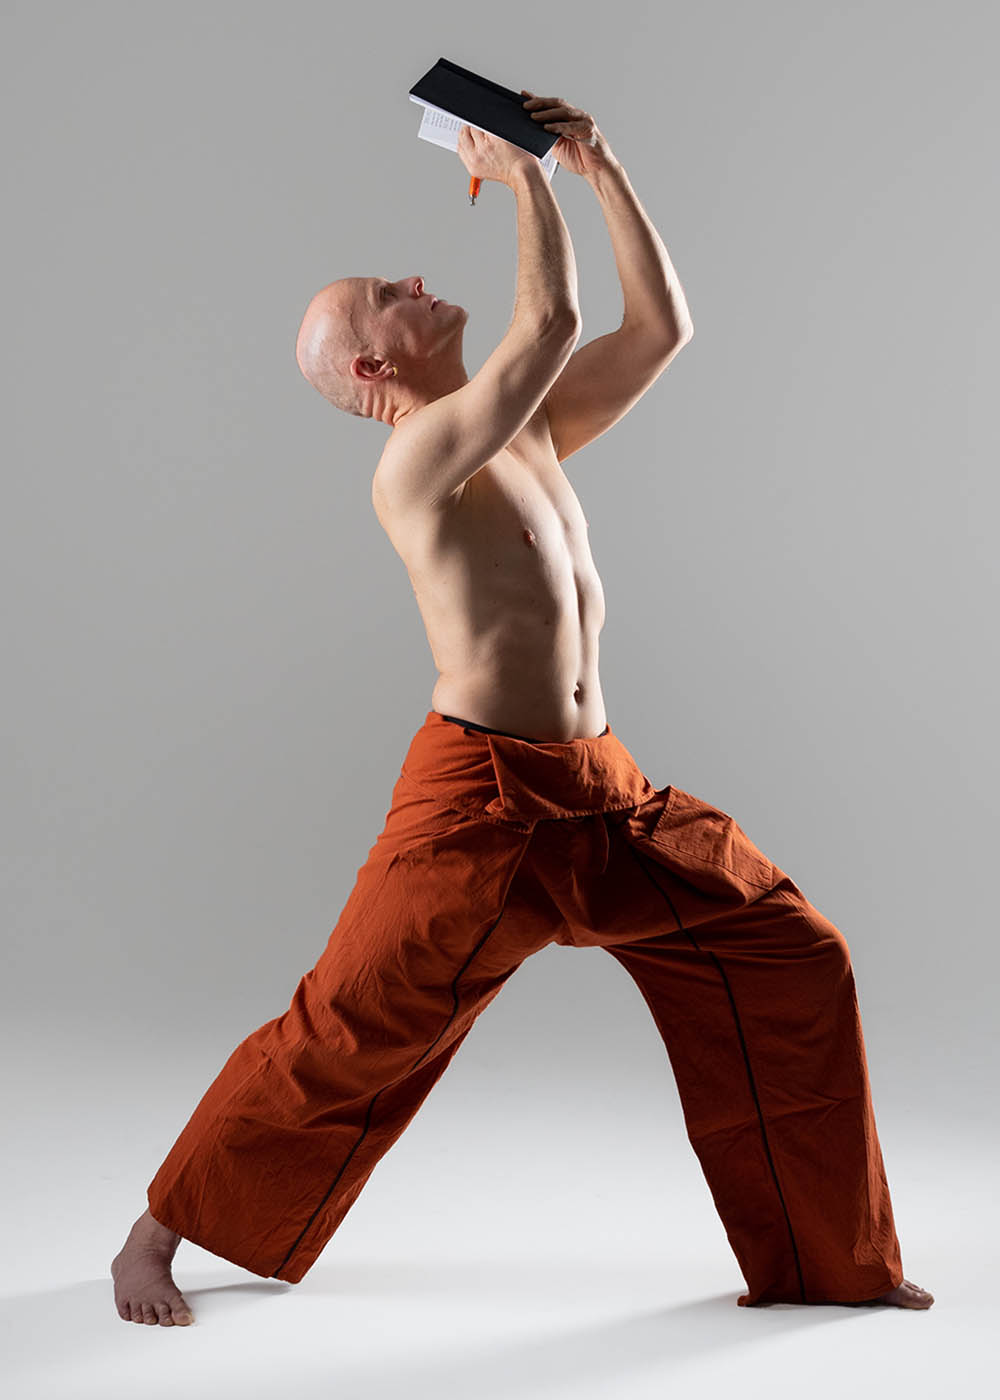 Christian Bechtel in Yoga-Haltung Krieger schreibt gleichzeitig in Notizbuch